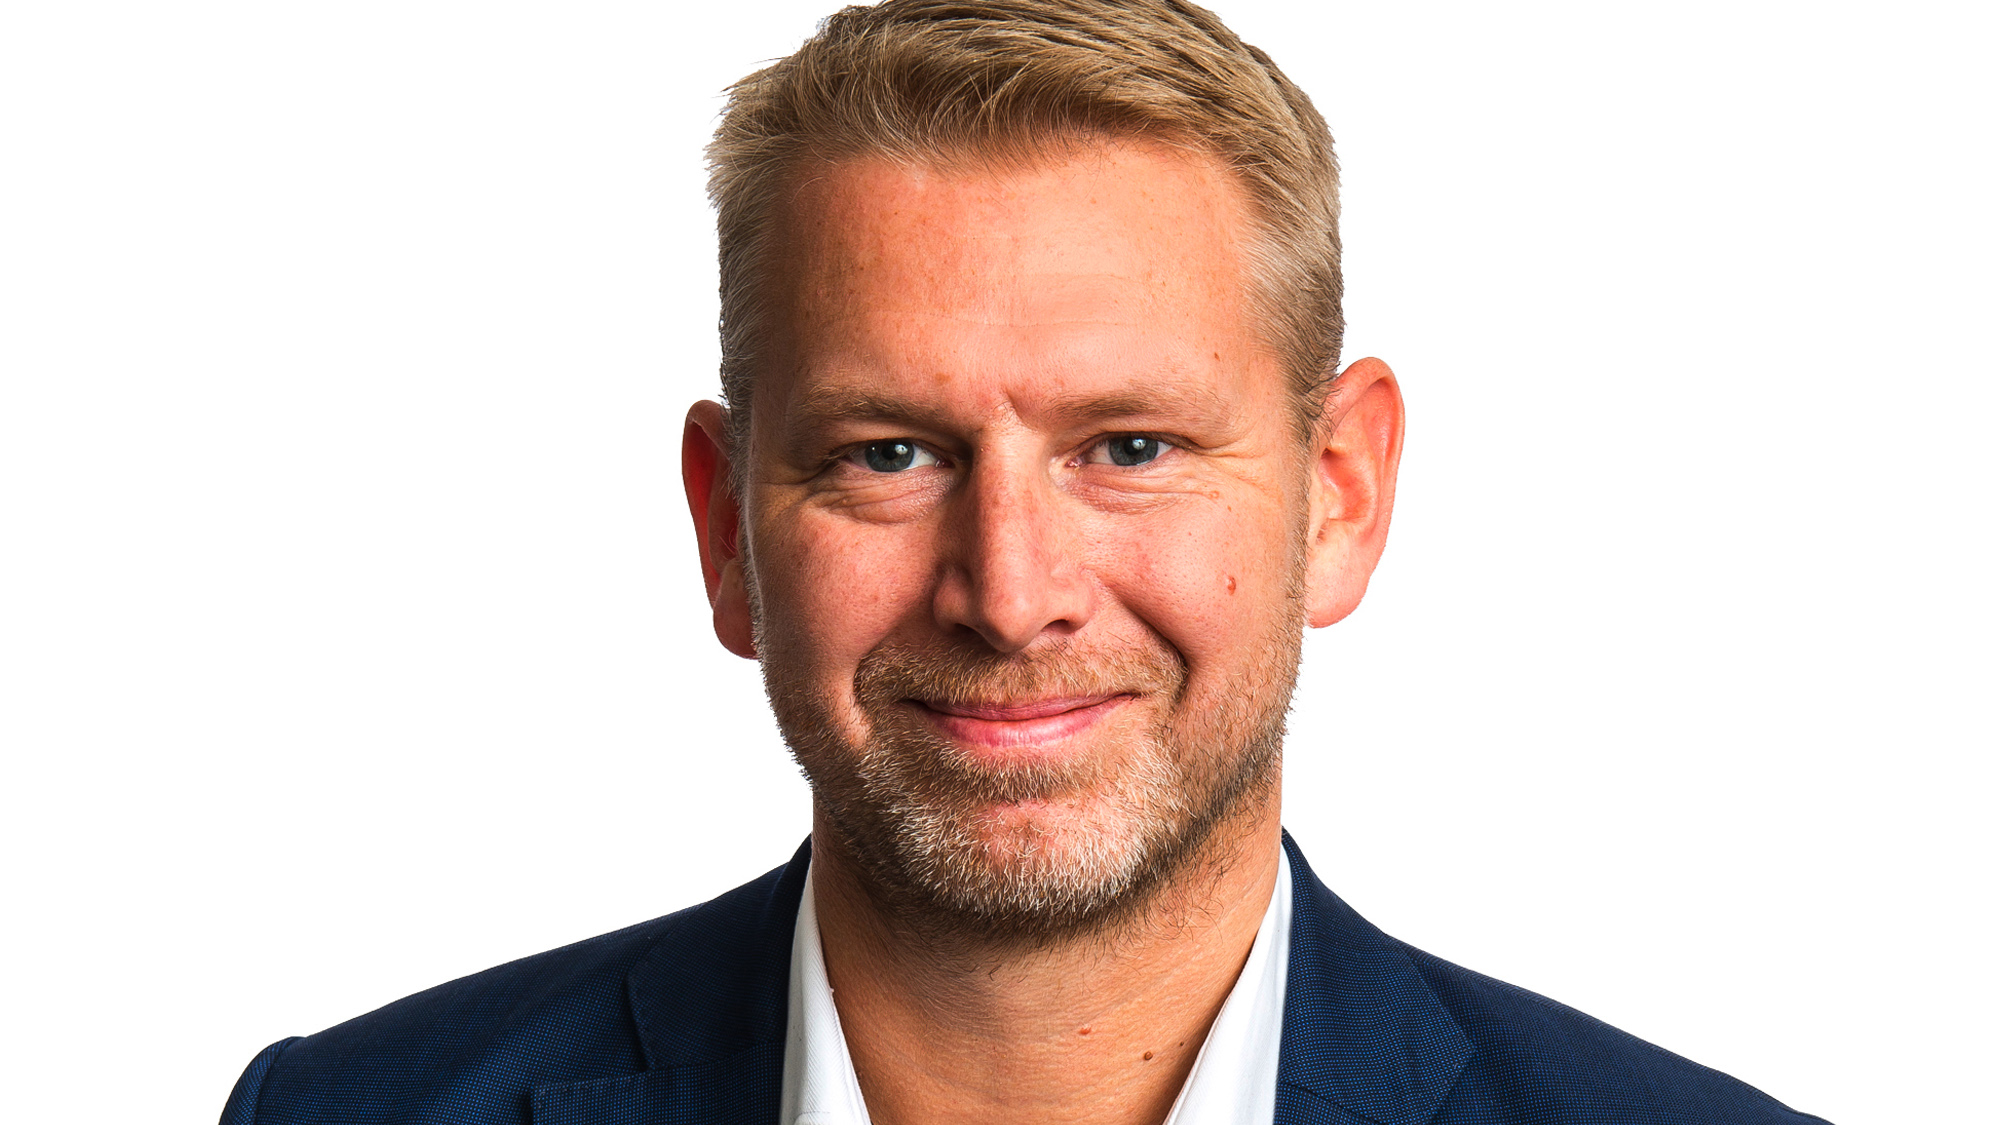 Peter Carlsson, CEO und Mitgründer von Northvolt. © Northvolt